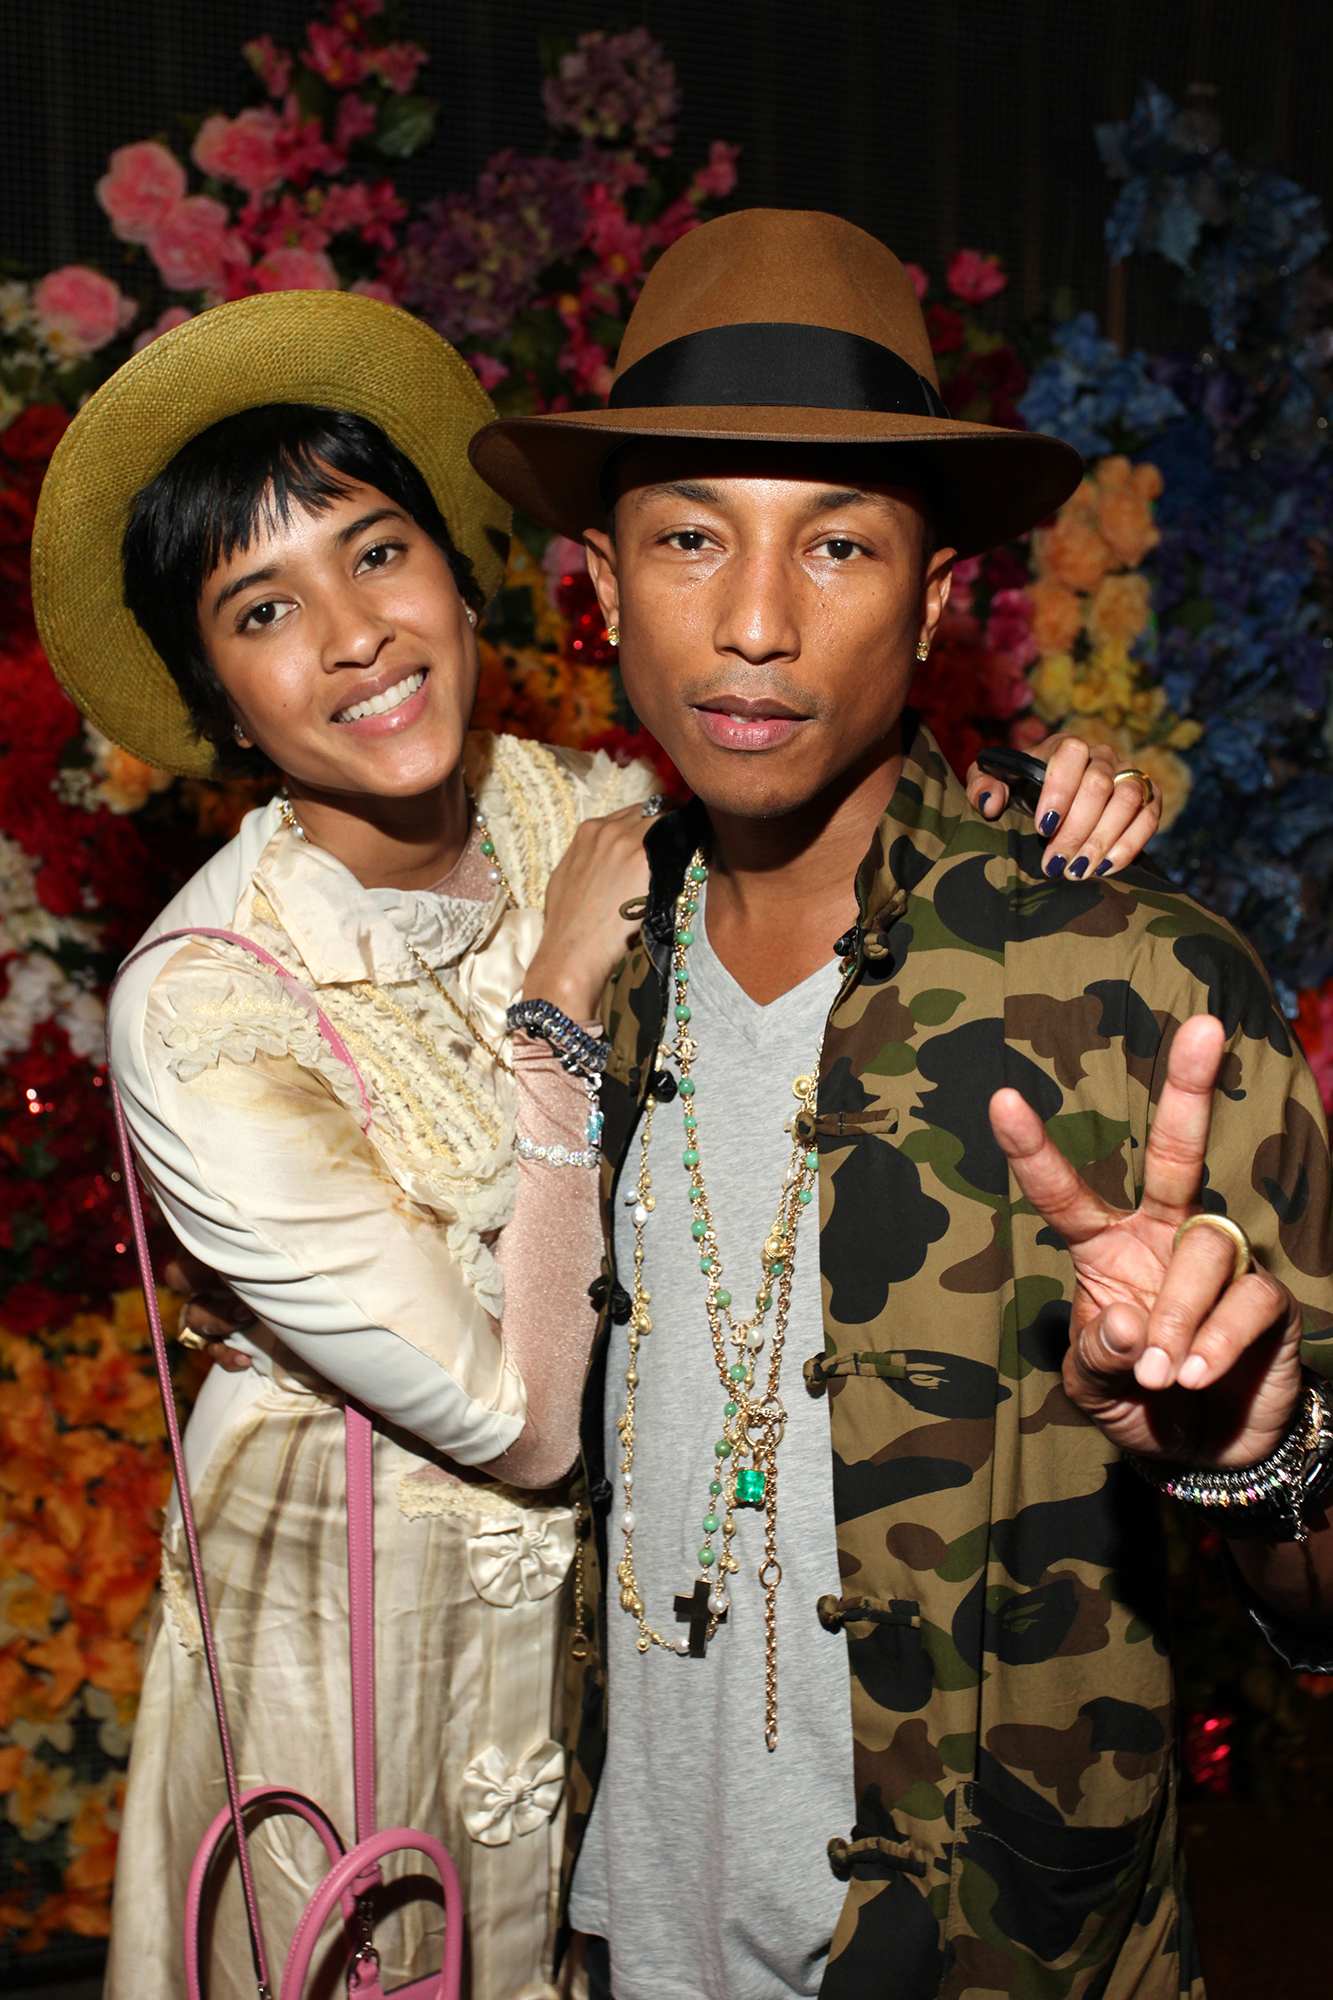 Pharrell Williams, Helen Lasichanh's Relationship Timeline: Pics